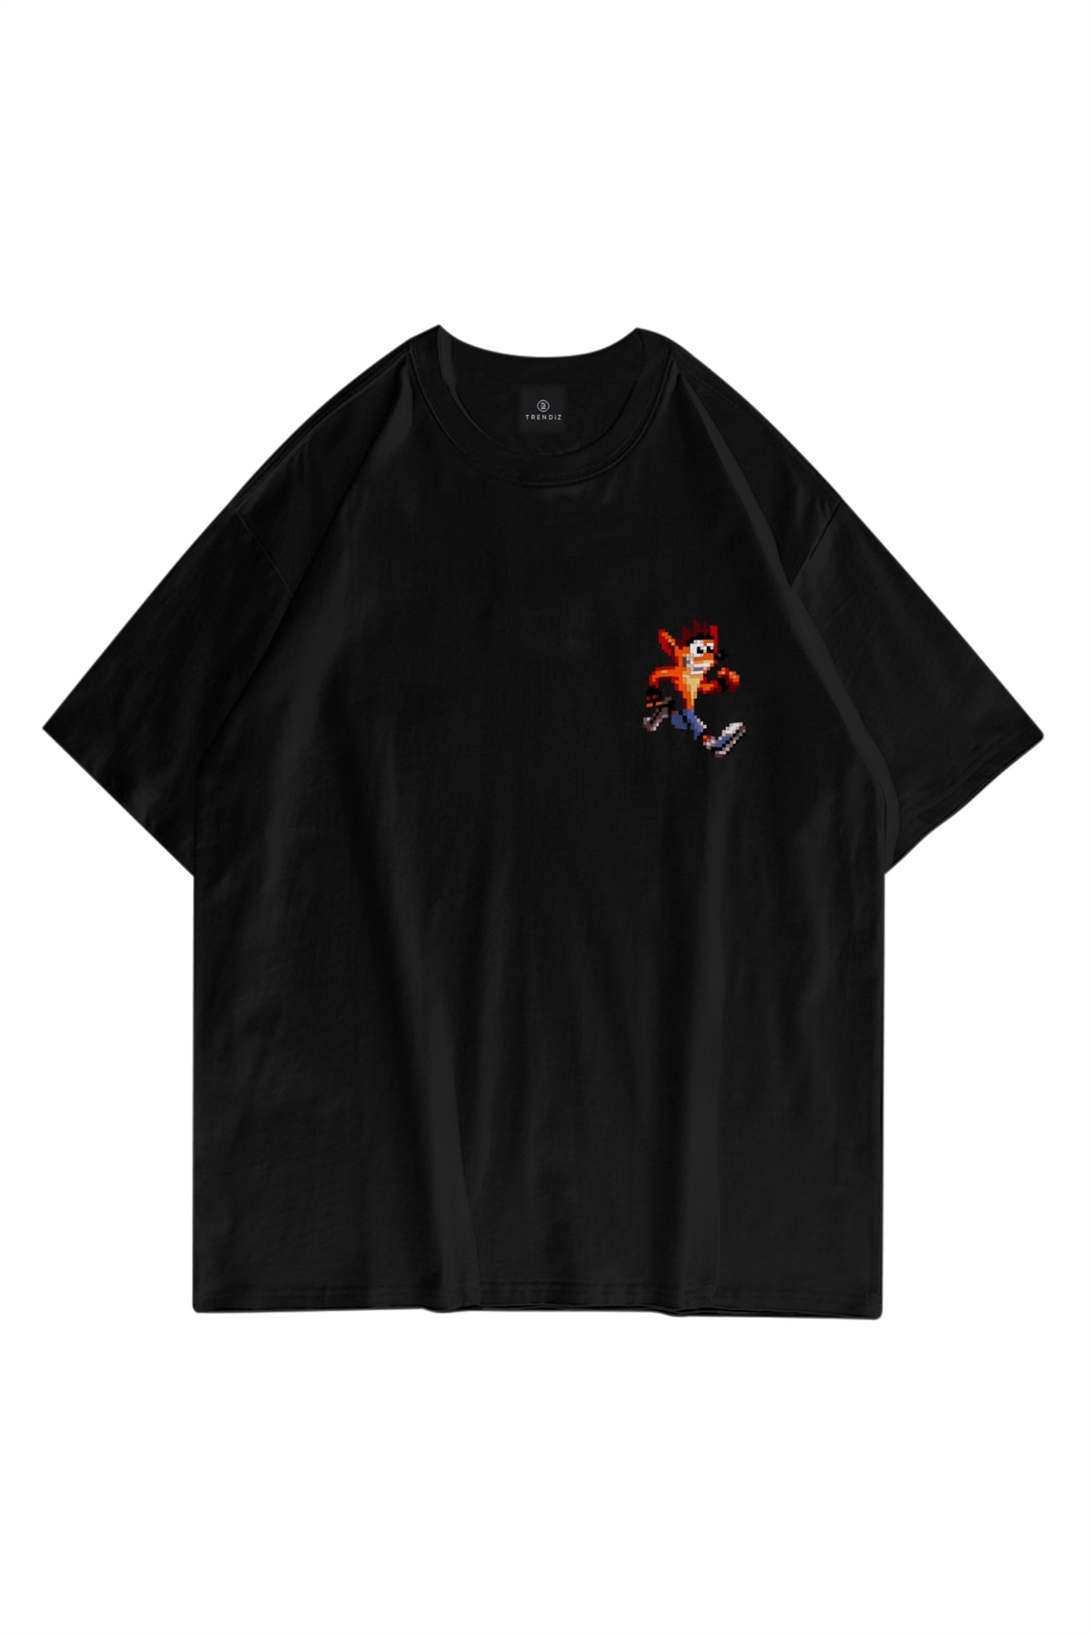 Trendiz Unisex Crash Bandicoot  Siyah Tshirt